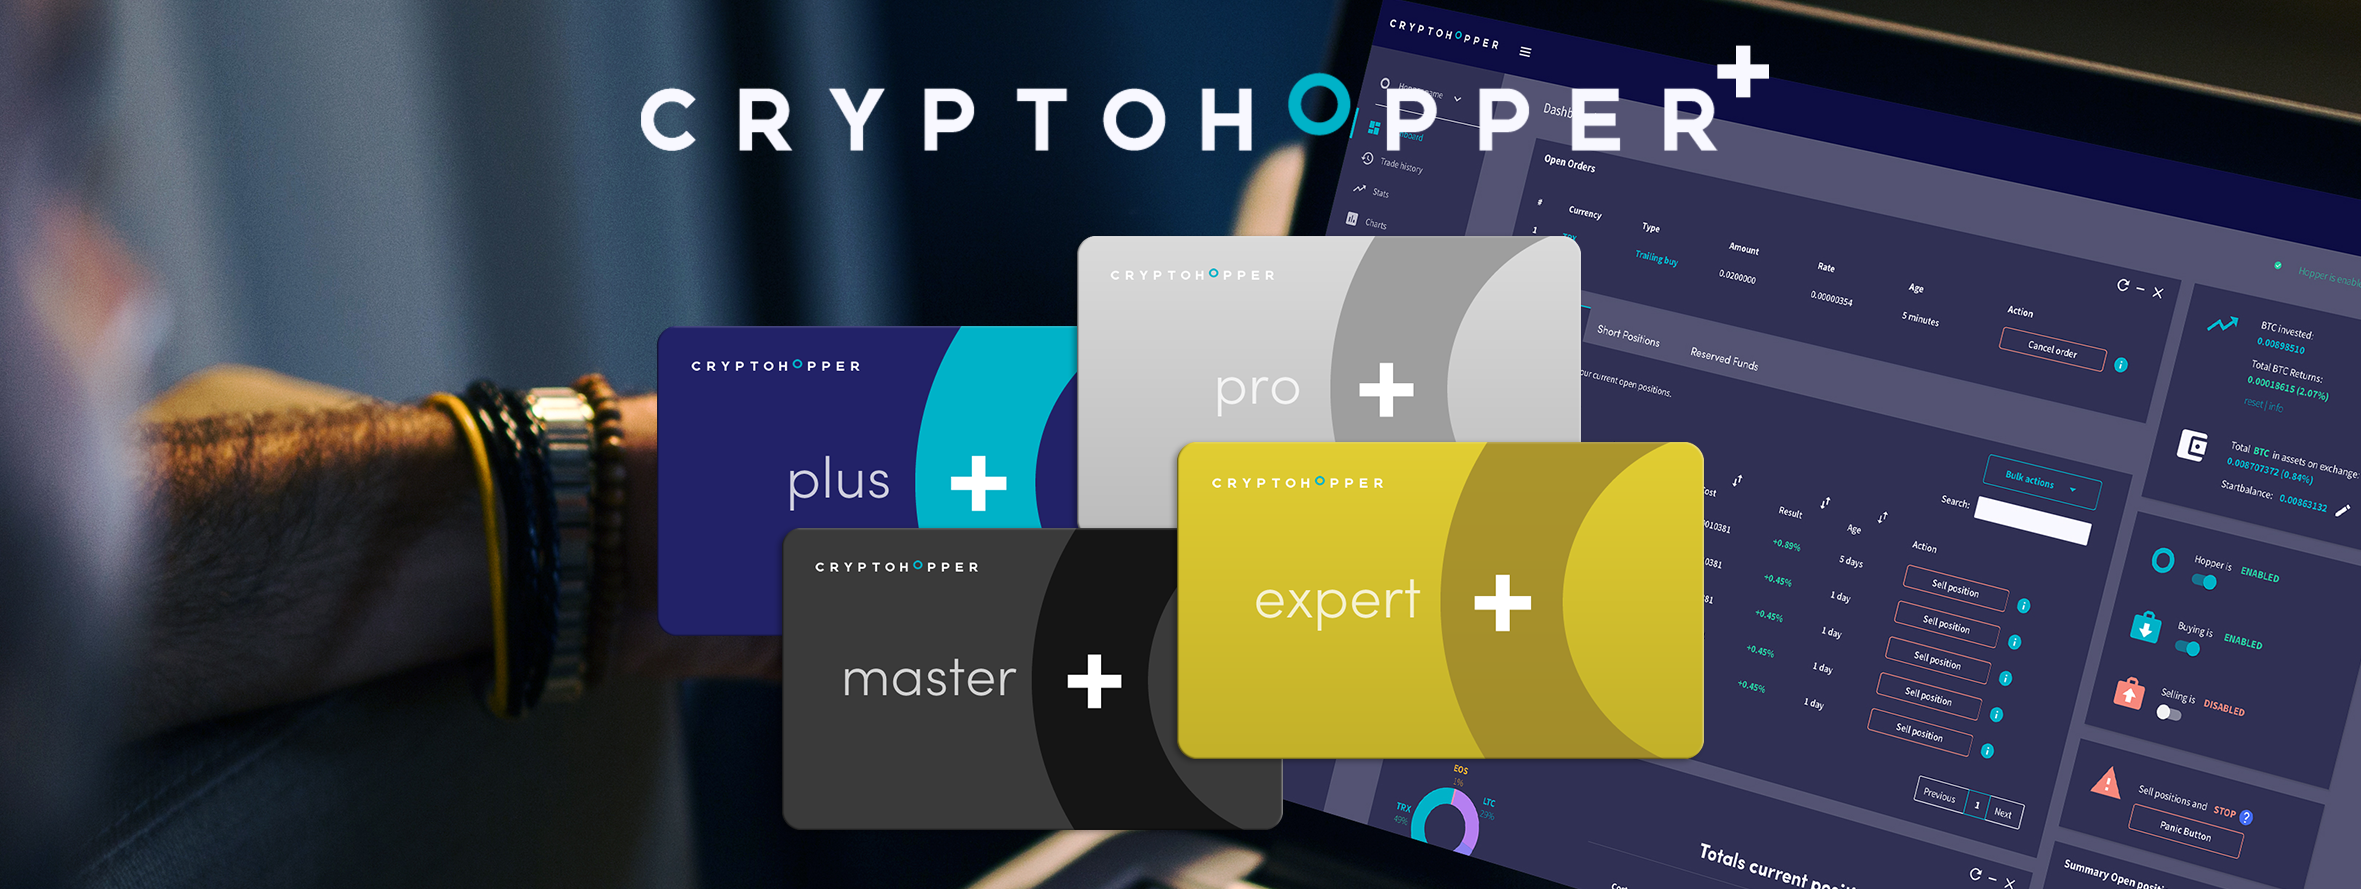 Cryptohopper launches its Cryptohopper+ program